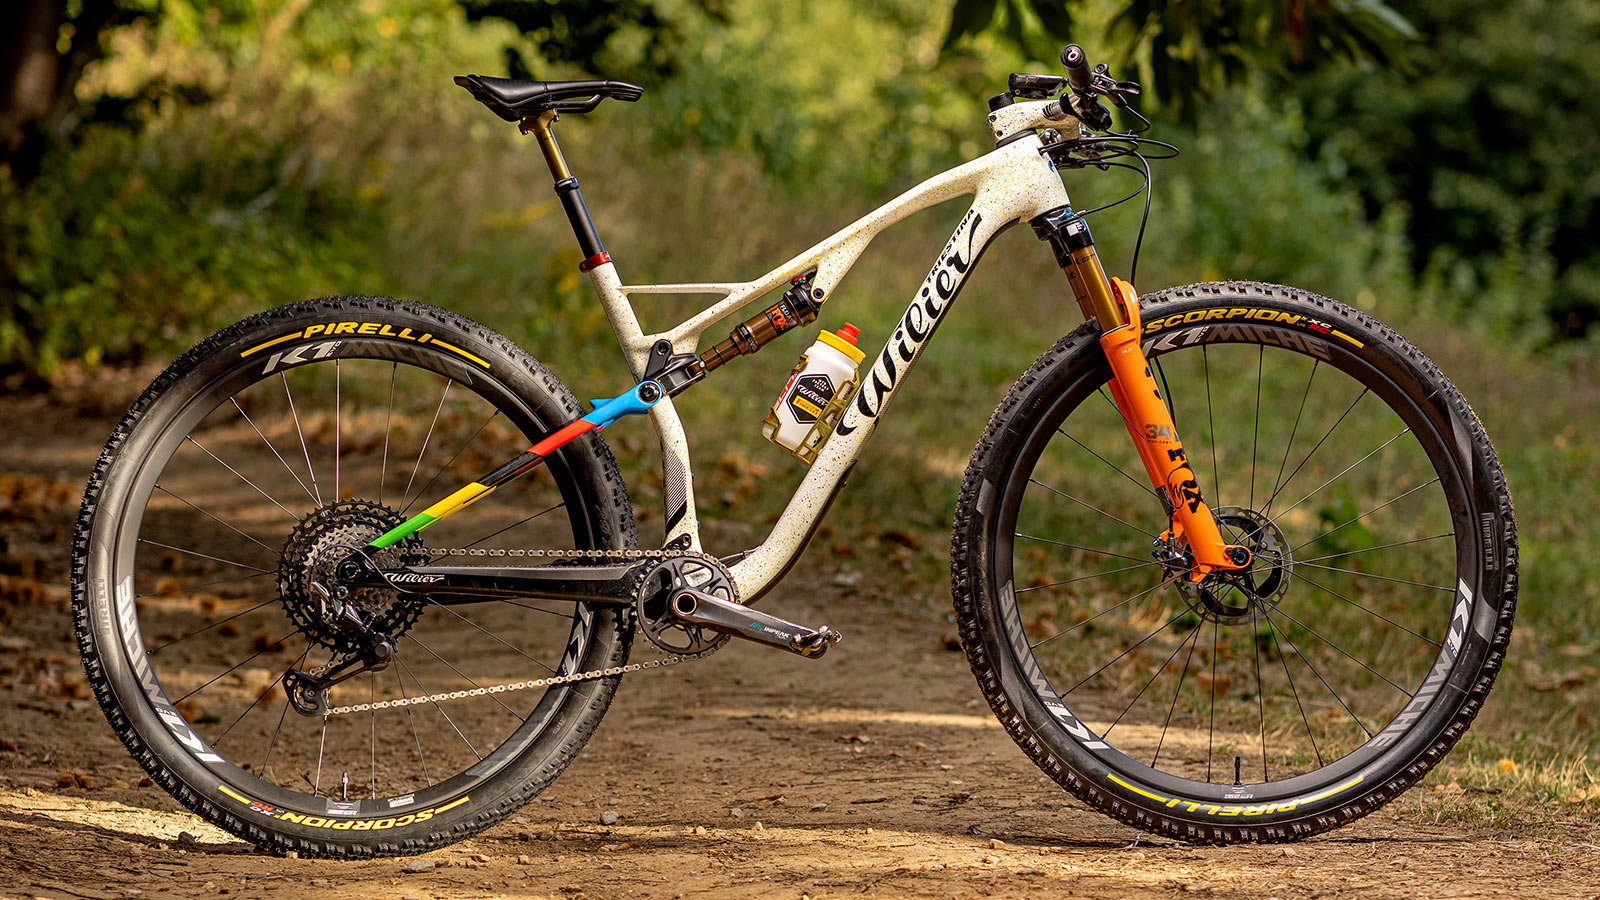 Miche K1 Evo lightweight wide carbon XC mountain bike wheels, Wilier Ultra SLR